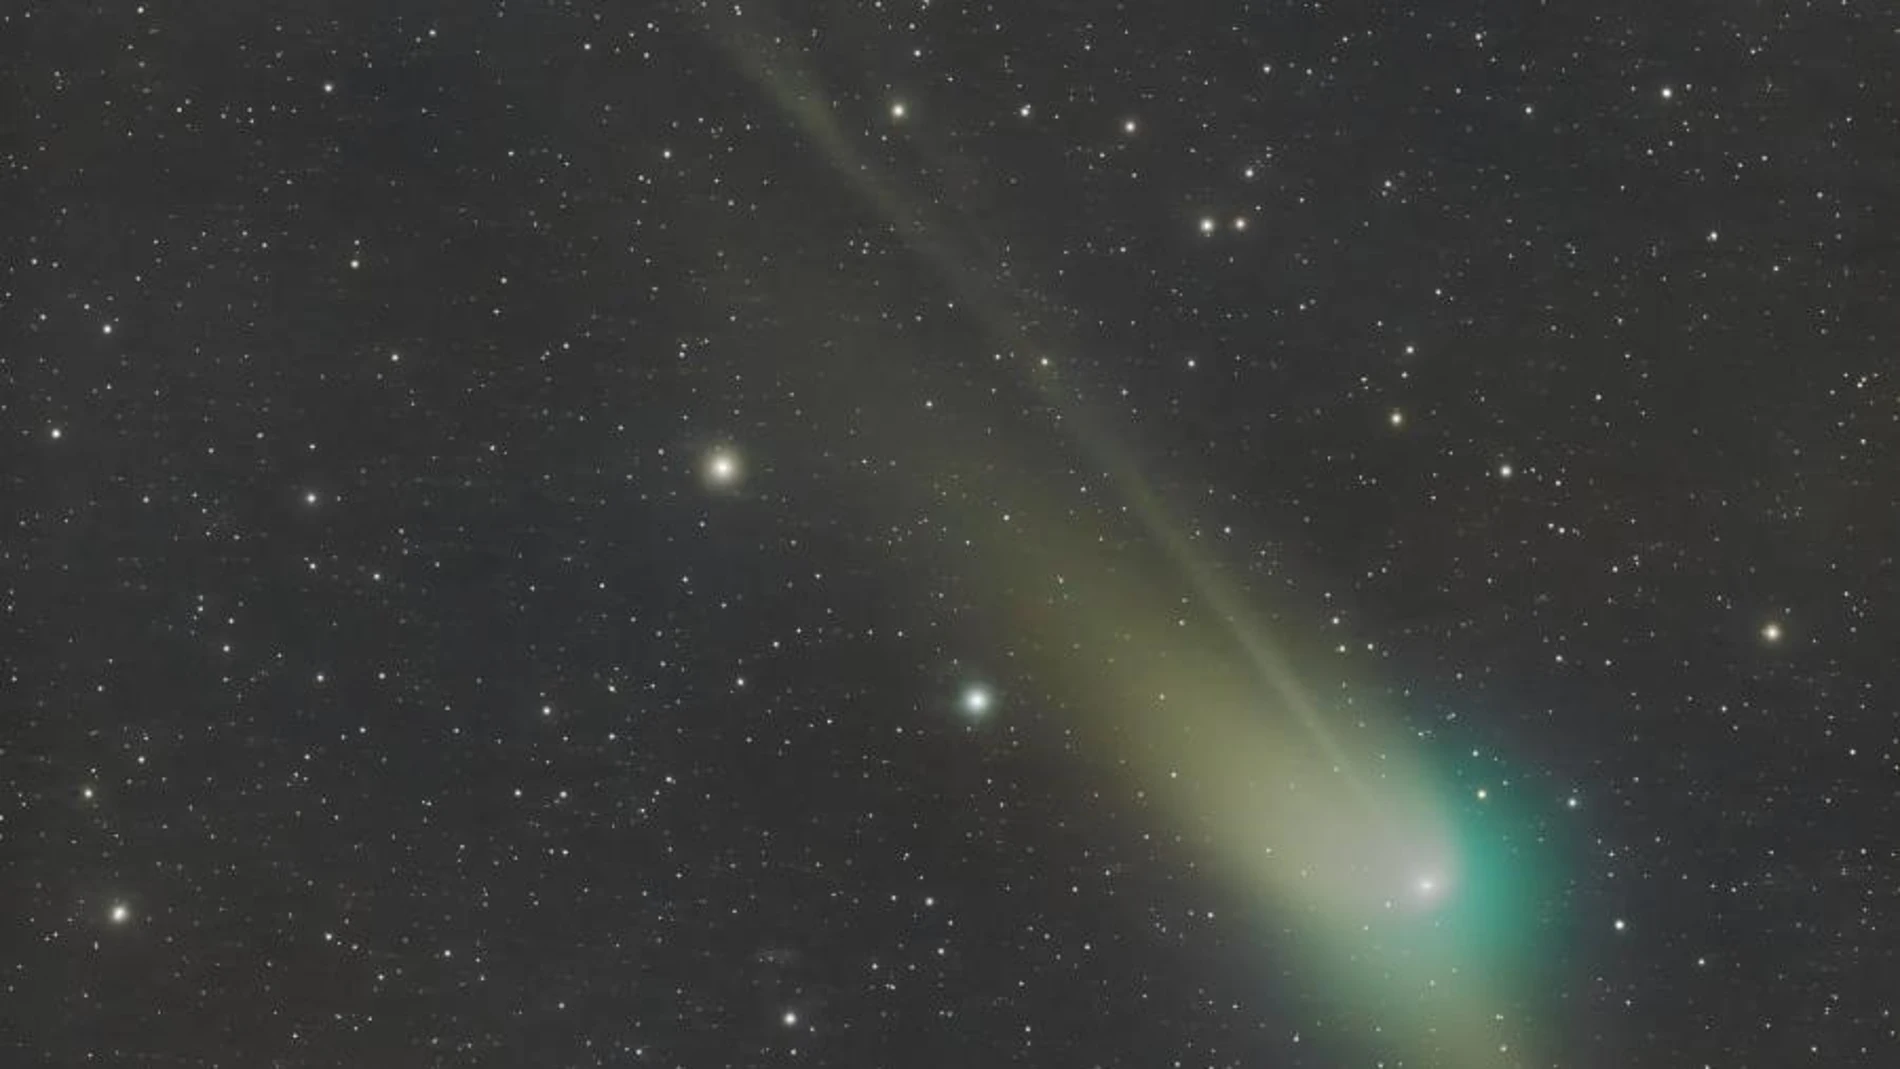 Recreación de un cometa en el espacio